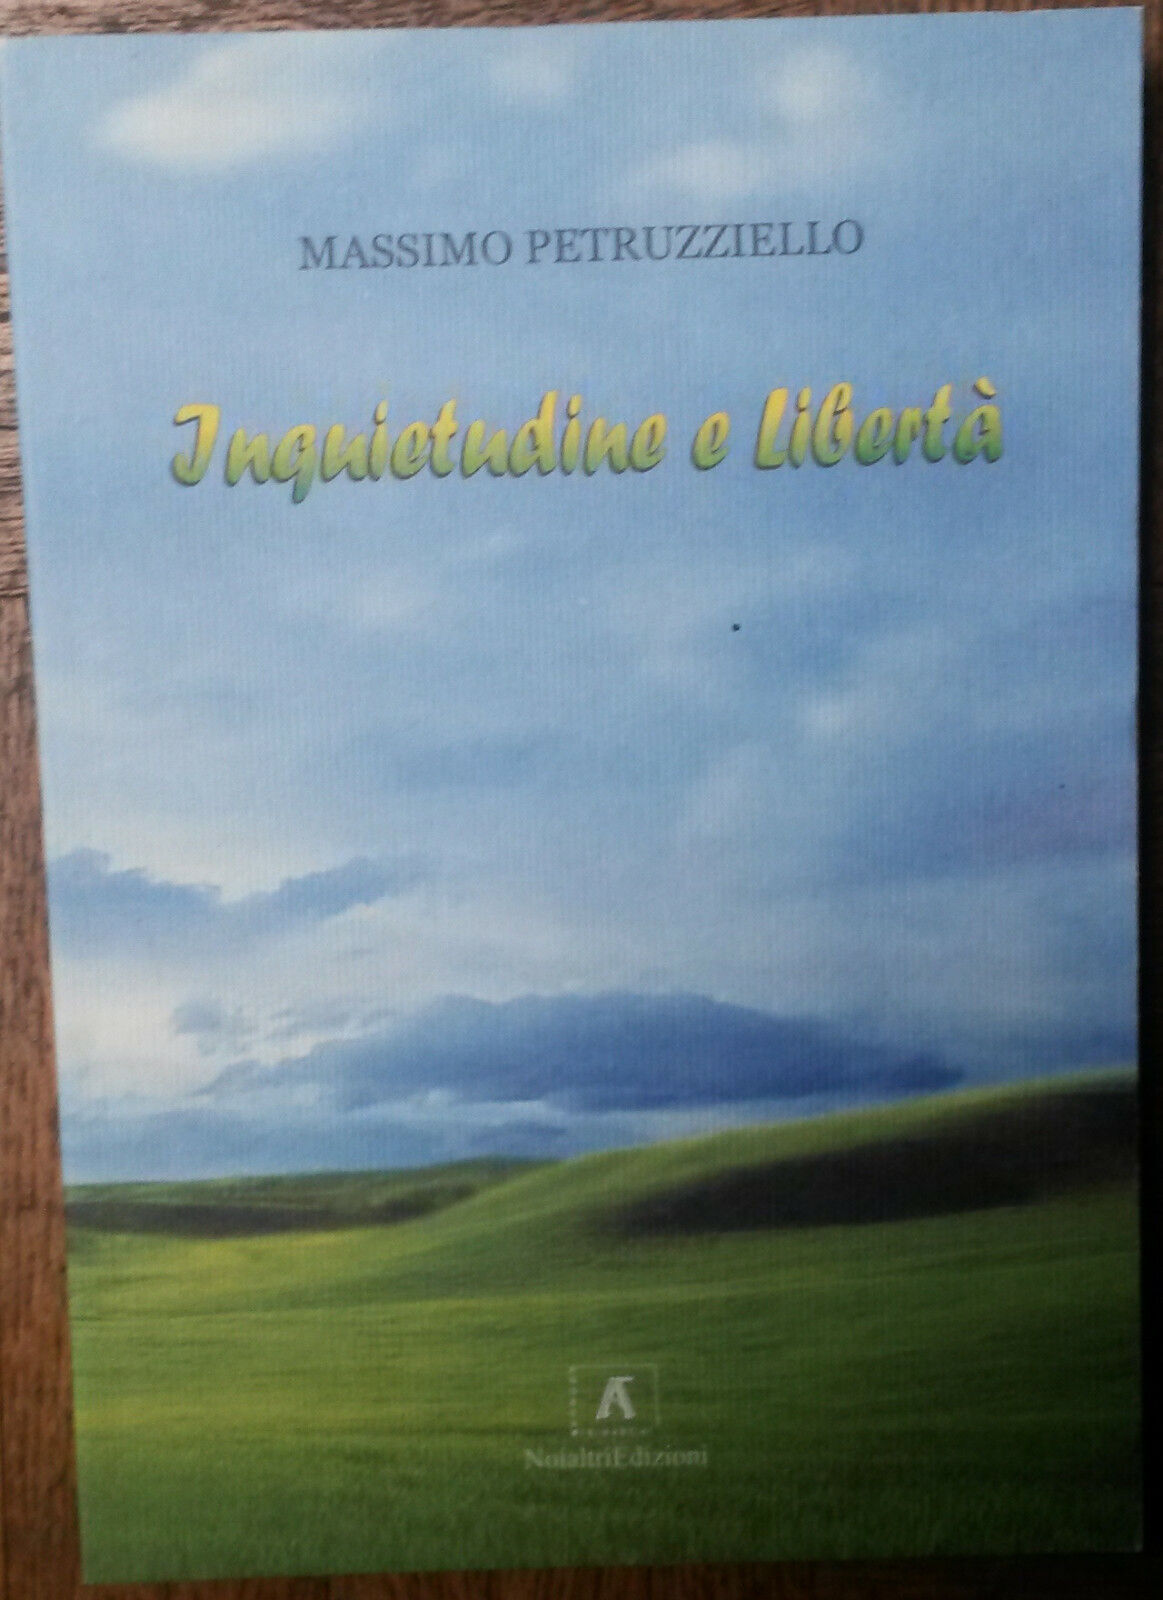 Inquietudine e libert? - Massimo Petruzziello - Noialtri Edizioni,2006 - R